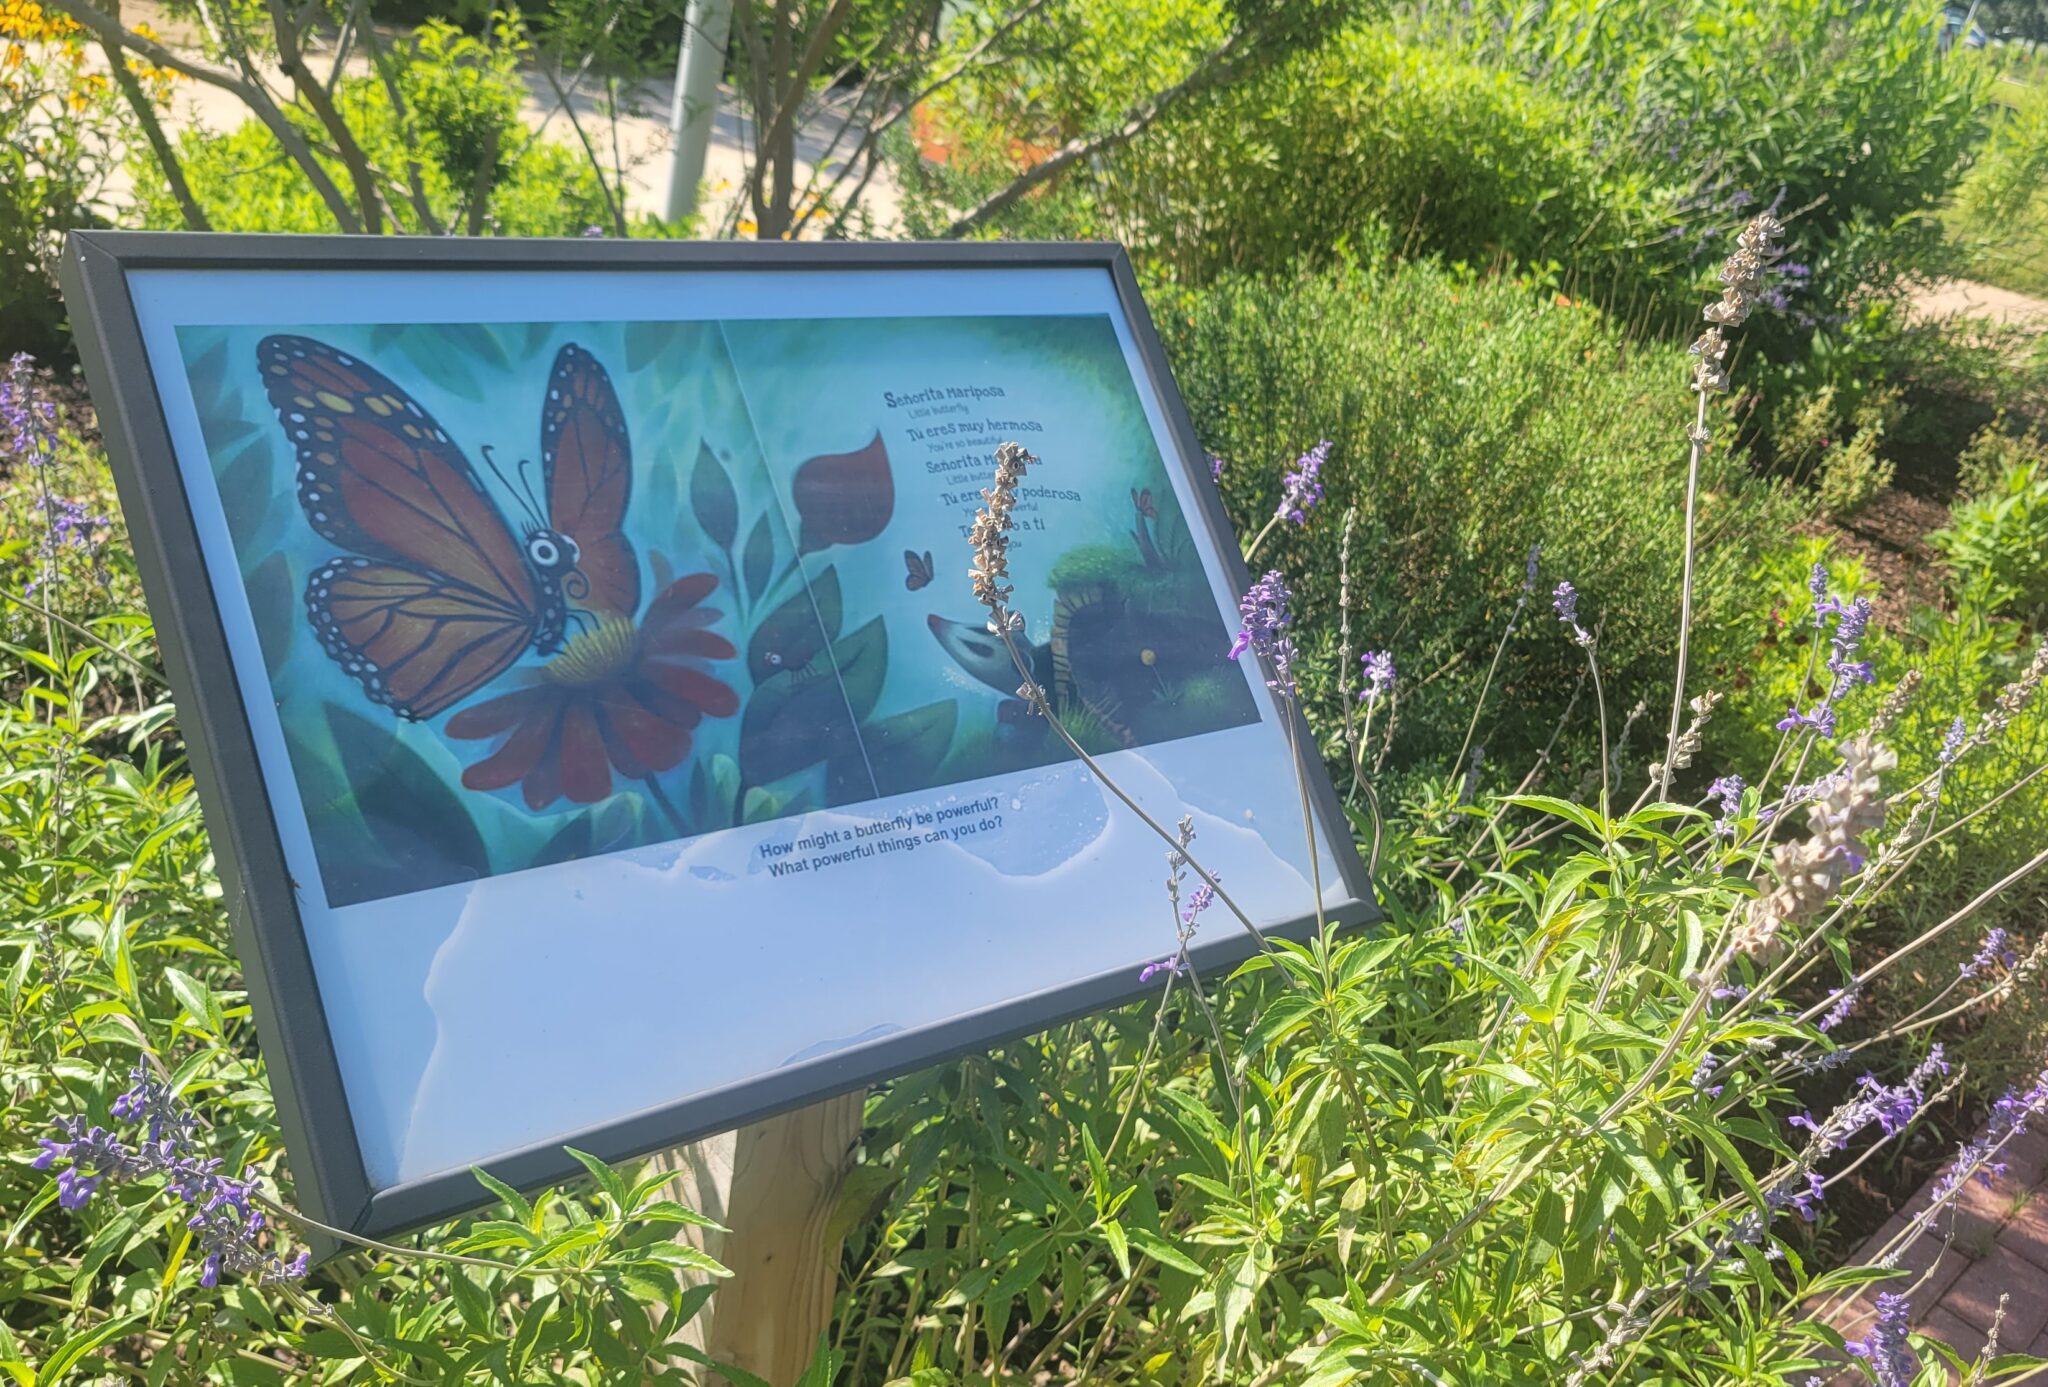 Seniorita Mariposa Storywalk on Pollinator Pathway